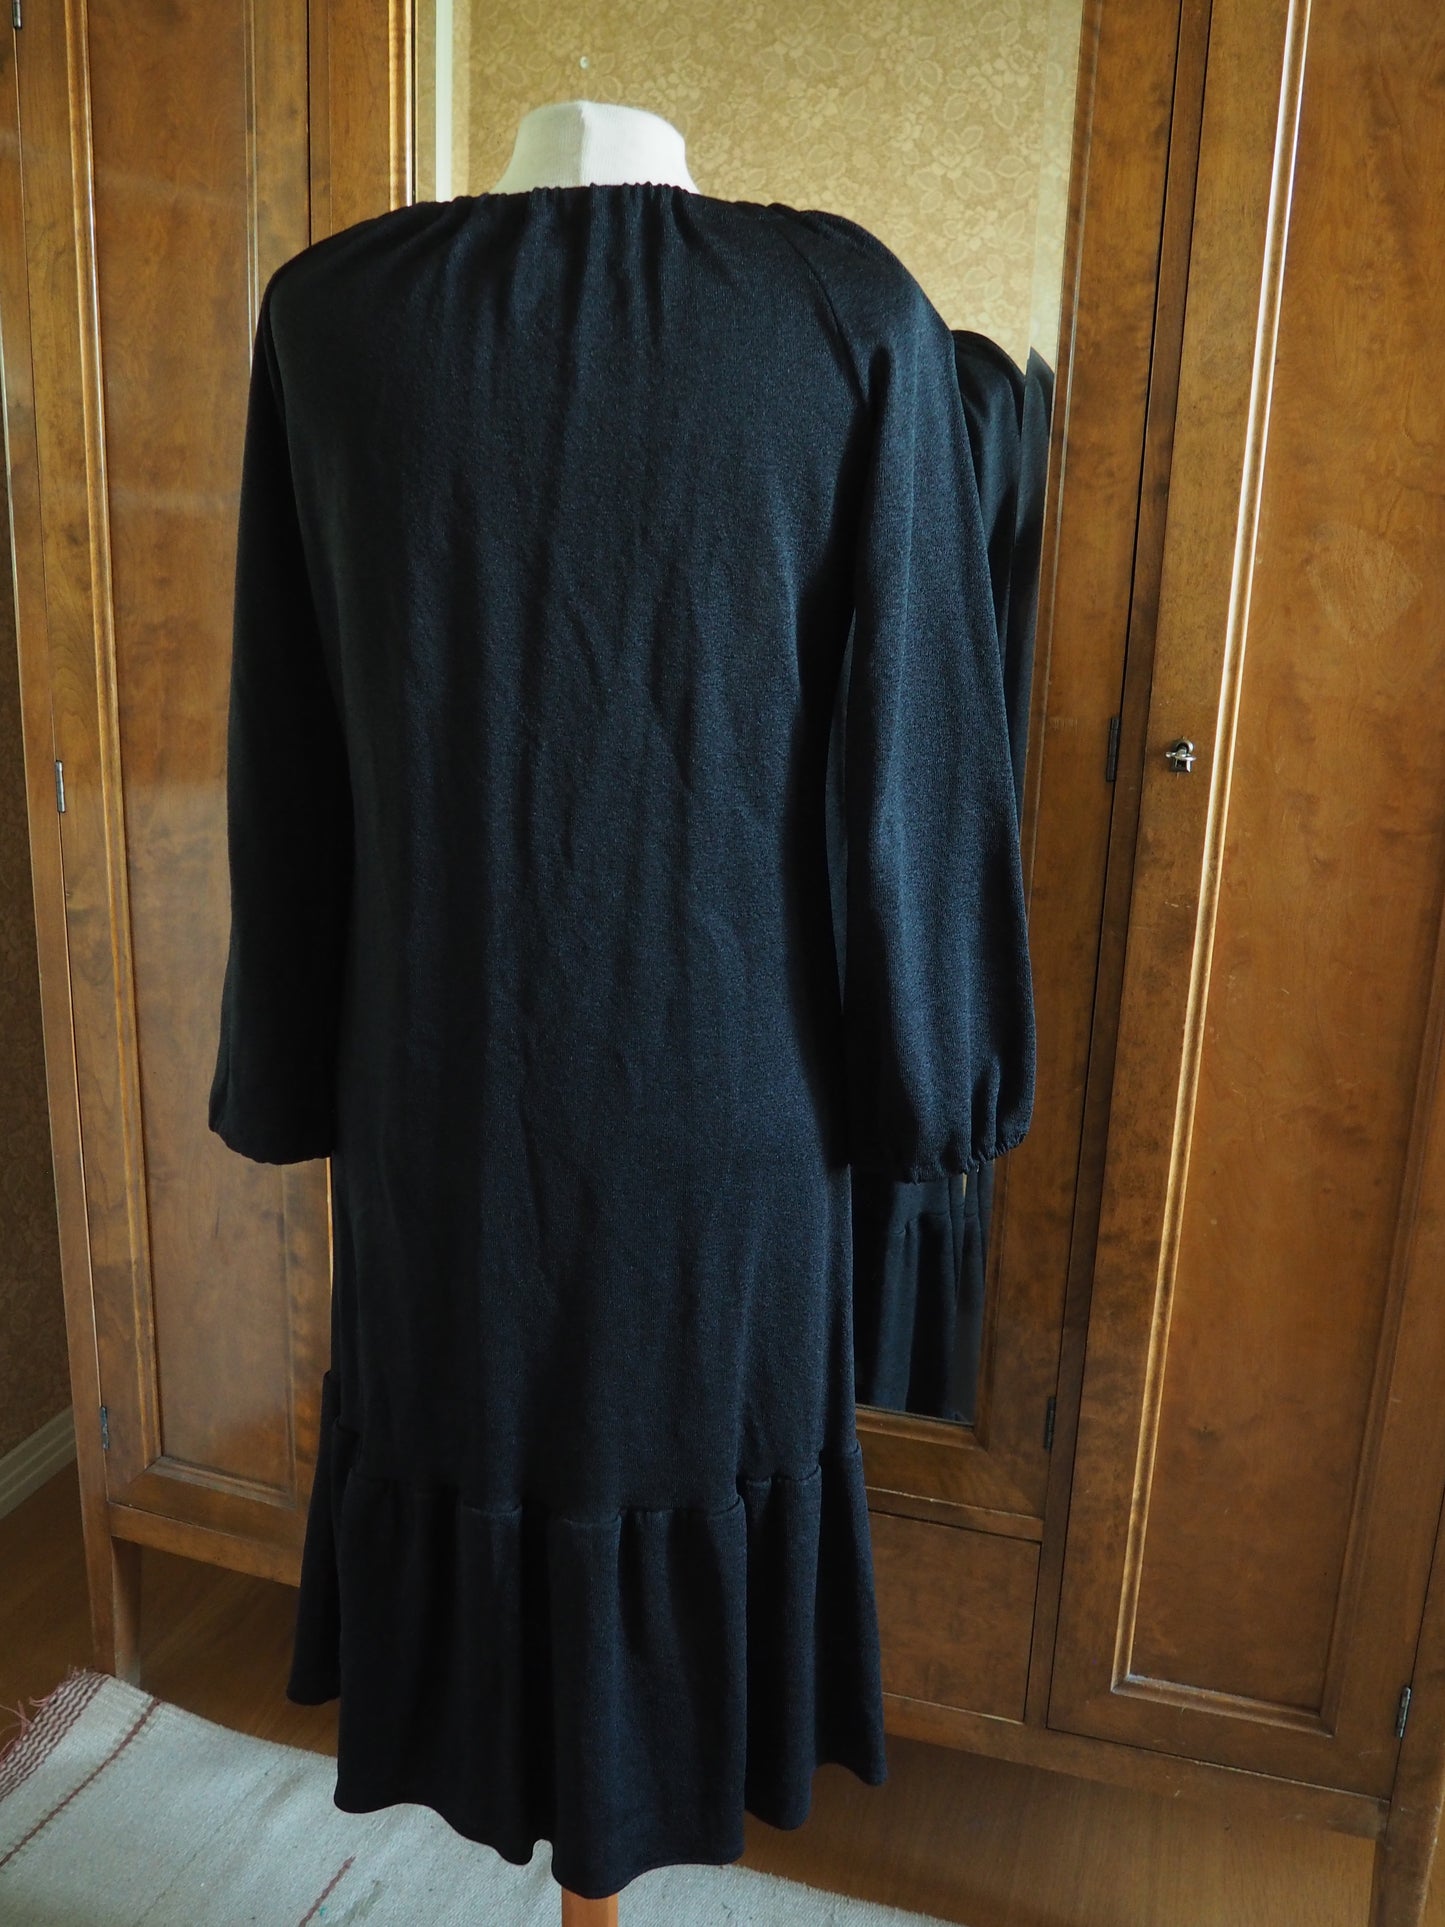 Musta Railonin mekko, käyttämätöntä vanhaa varastoa